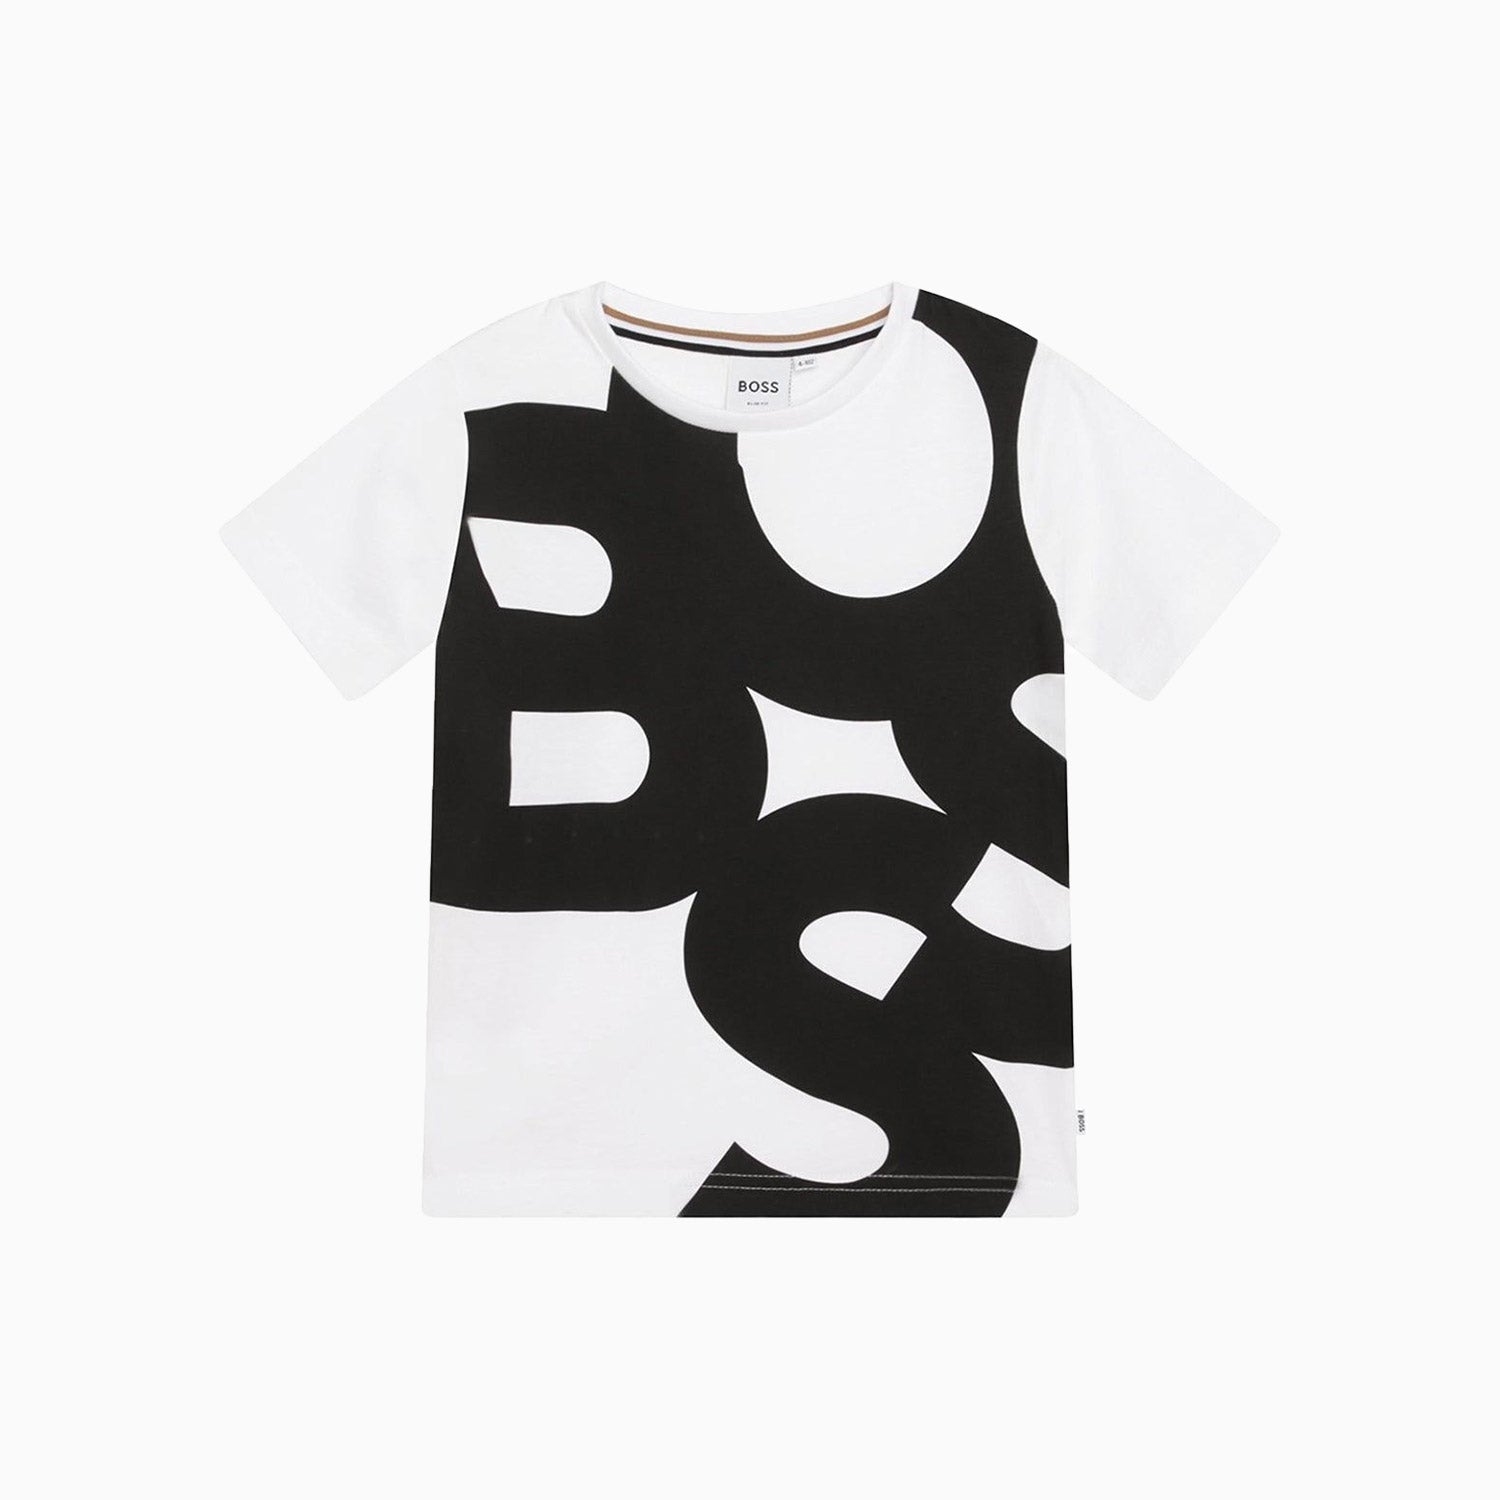 hugo-boss-kids-logo-t-shirt-j25m06-10b